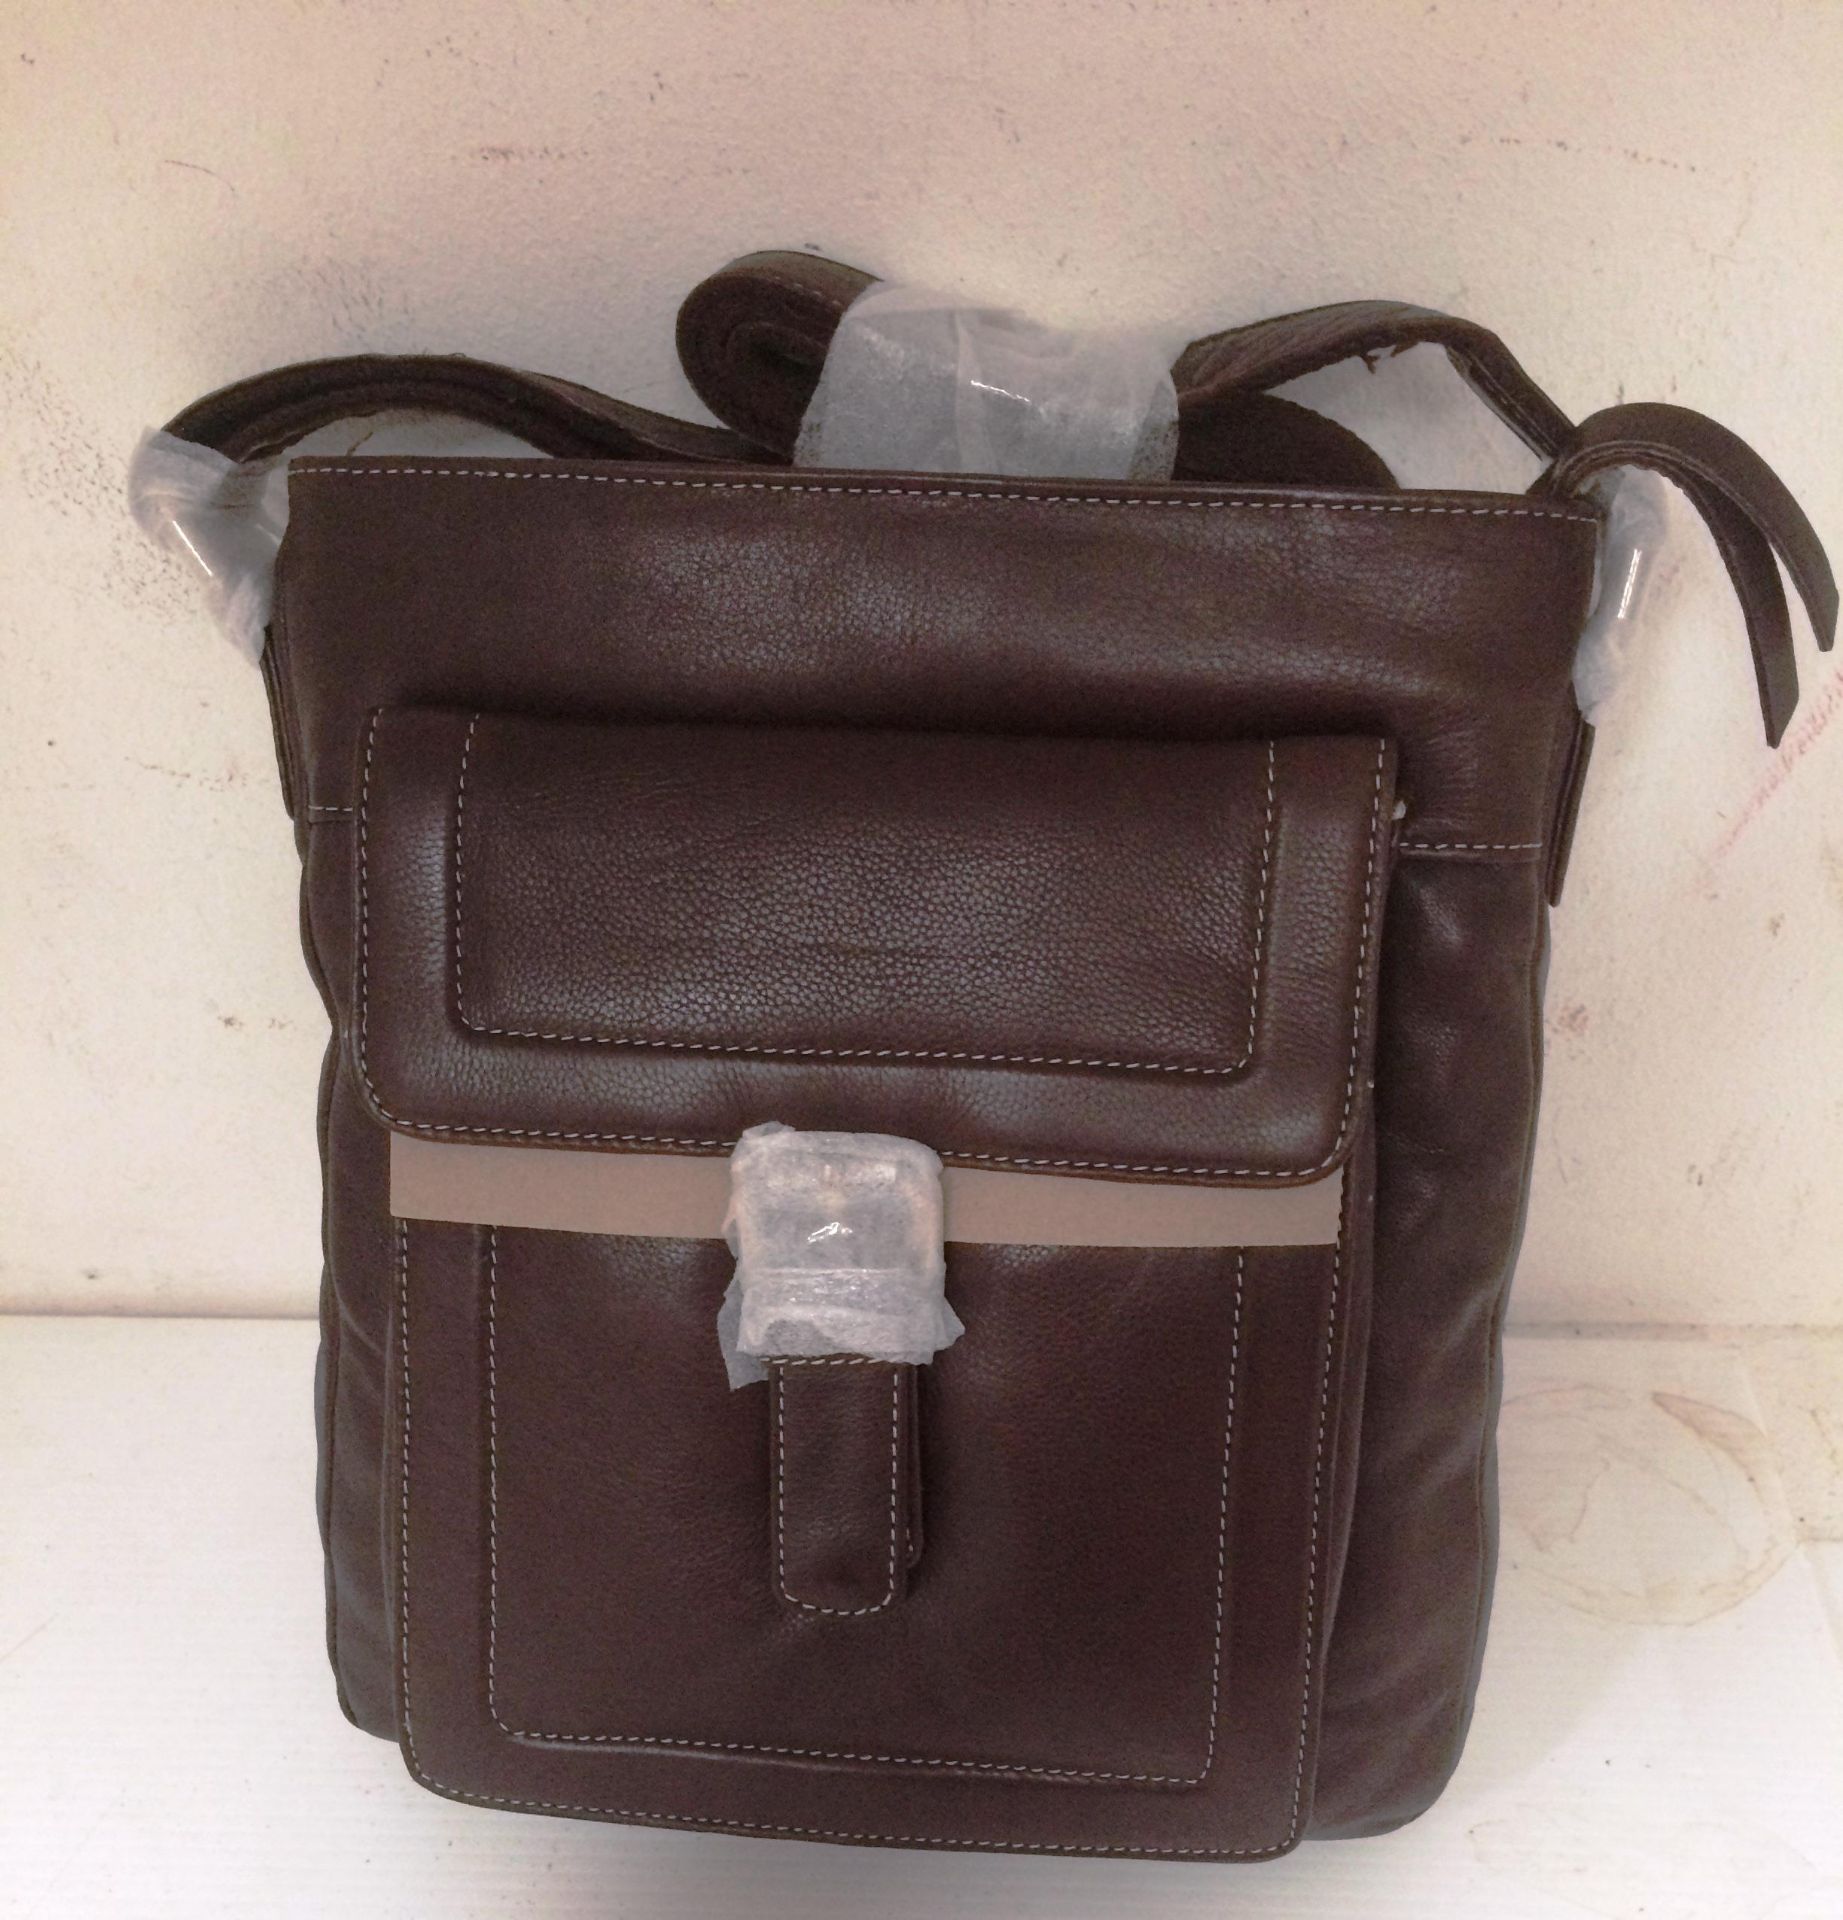 A Brunhide 119-300 chocolate leather shoulder bag